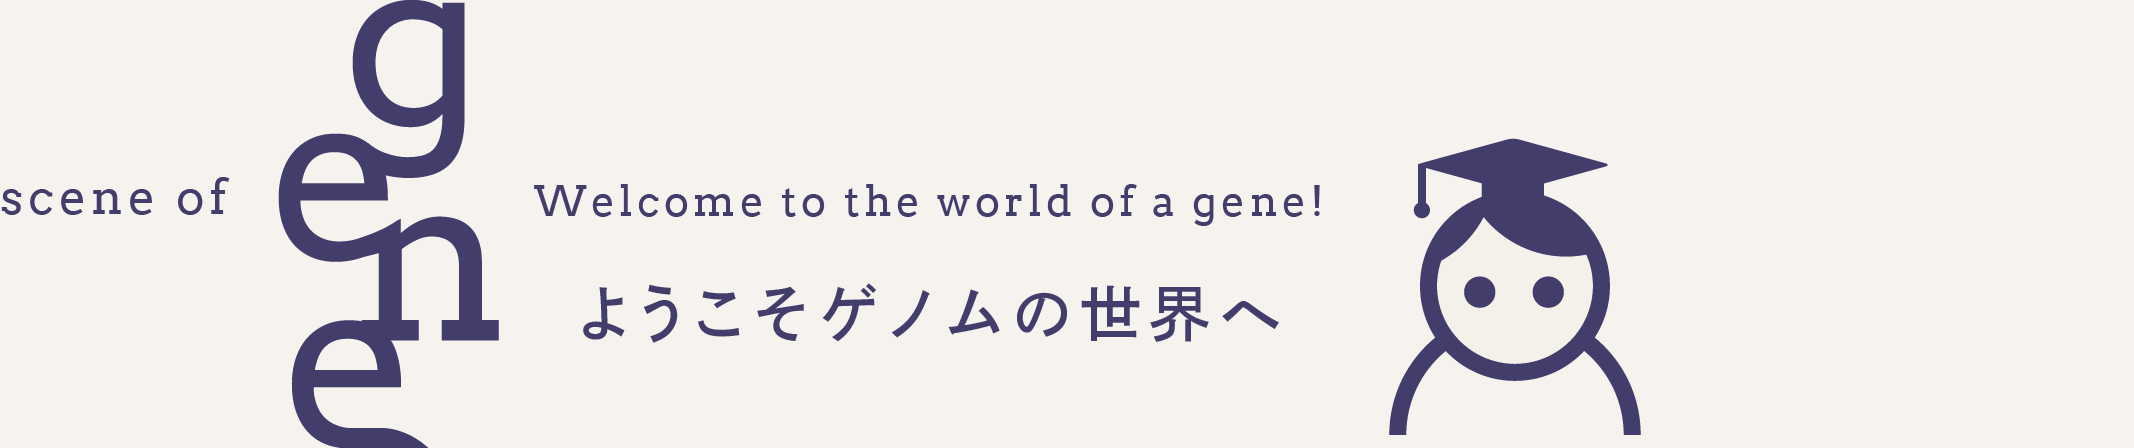 布施昇男 | ようこそゲノムの世界へ